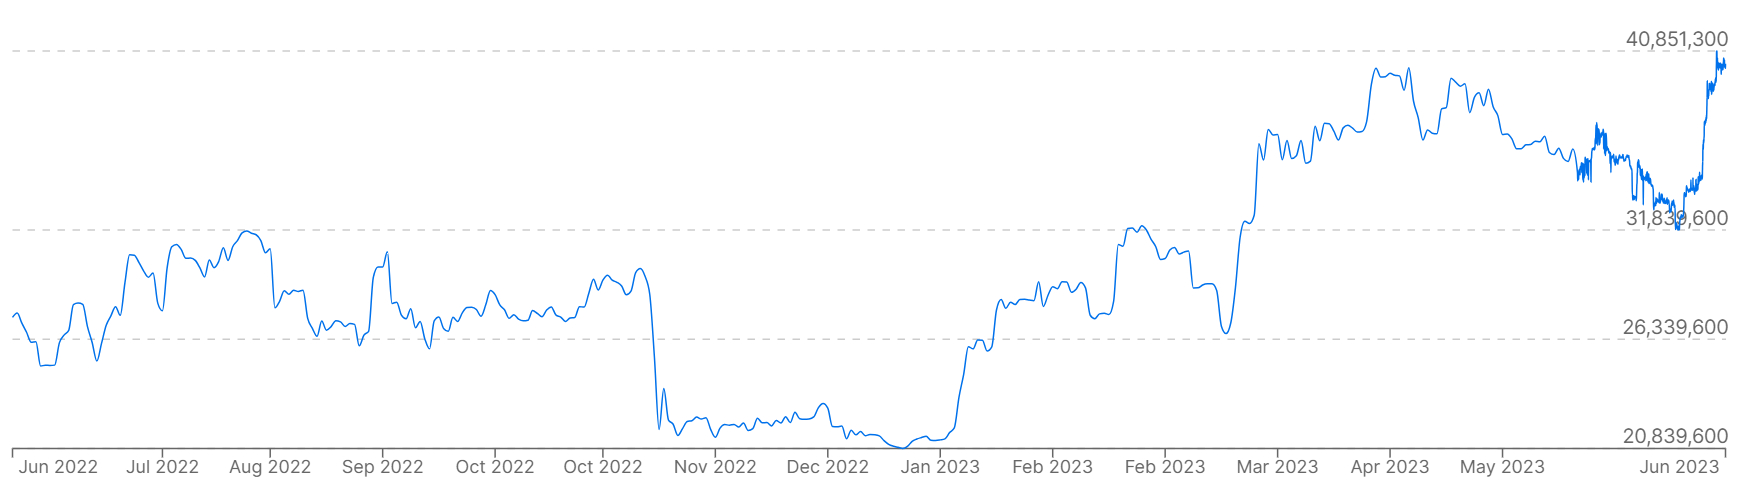 Geçen yıl Güney Kore Wonu karşısında Bitcoin fiyatlarını gösteren bir grafik.